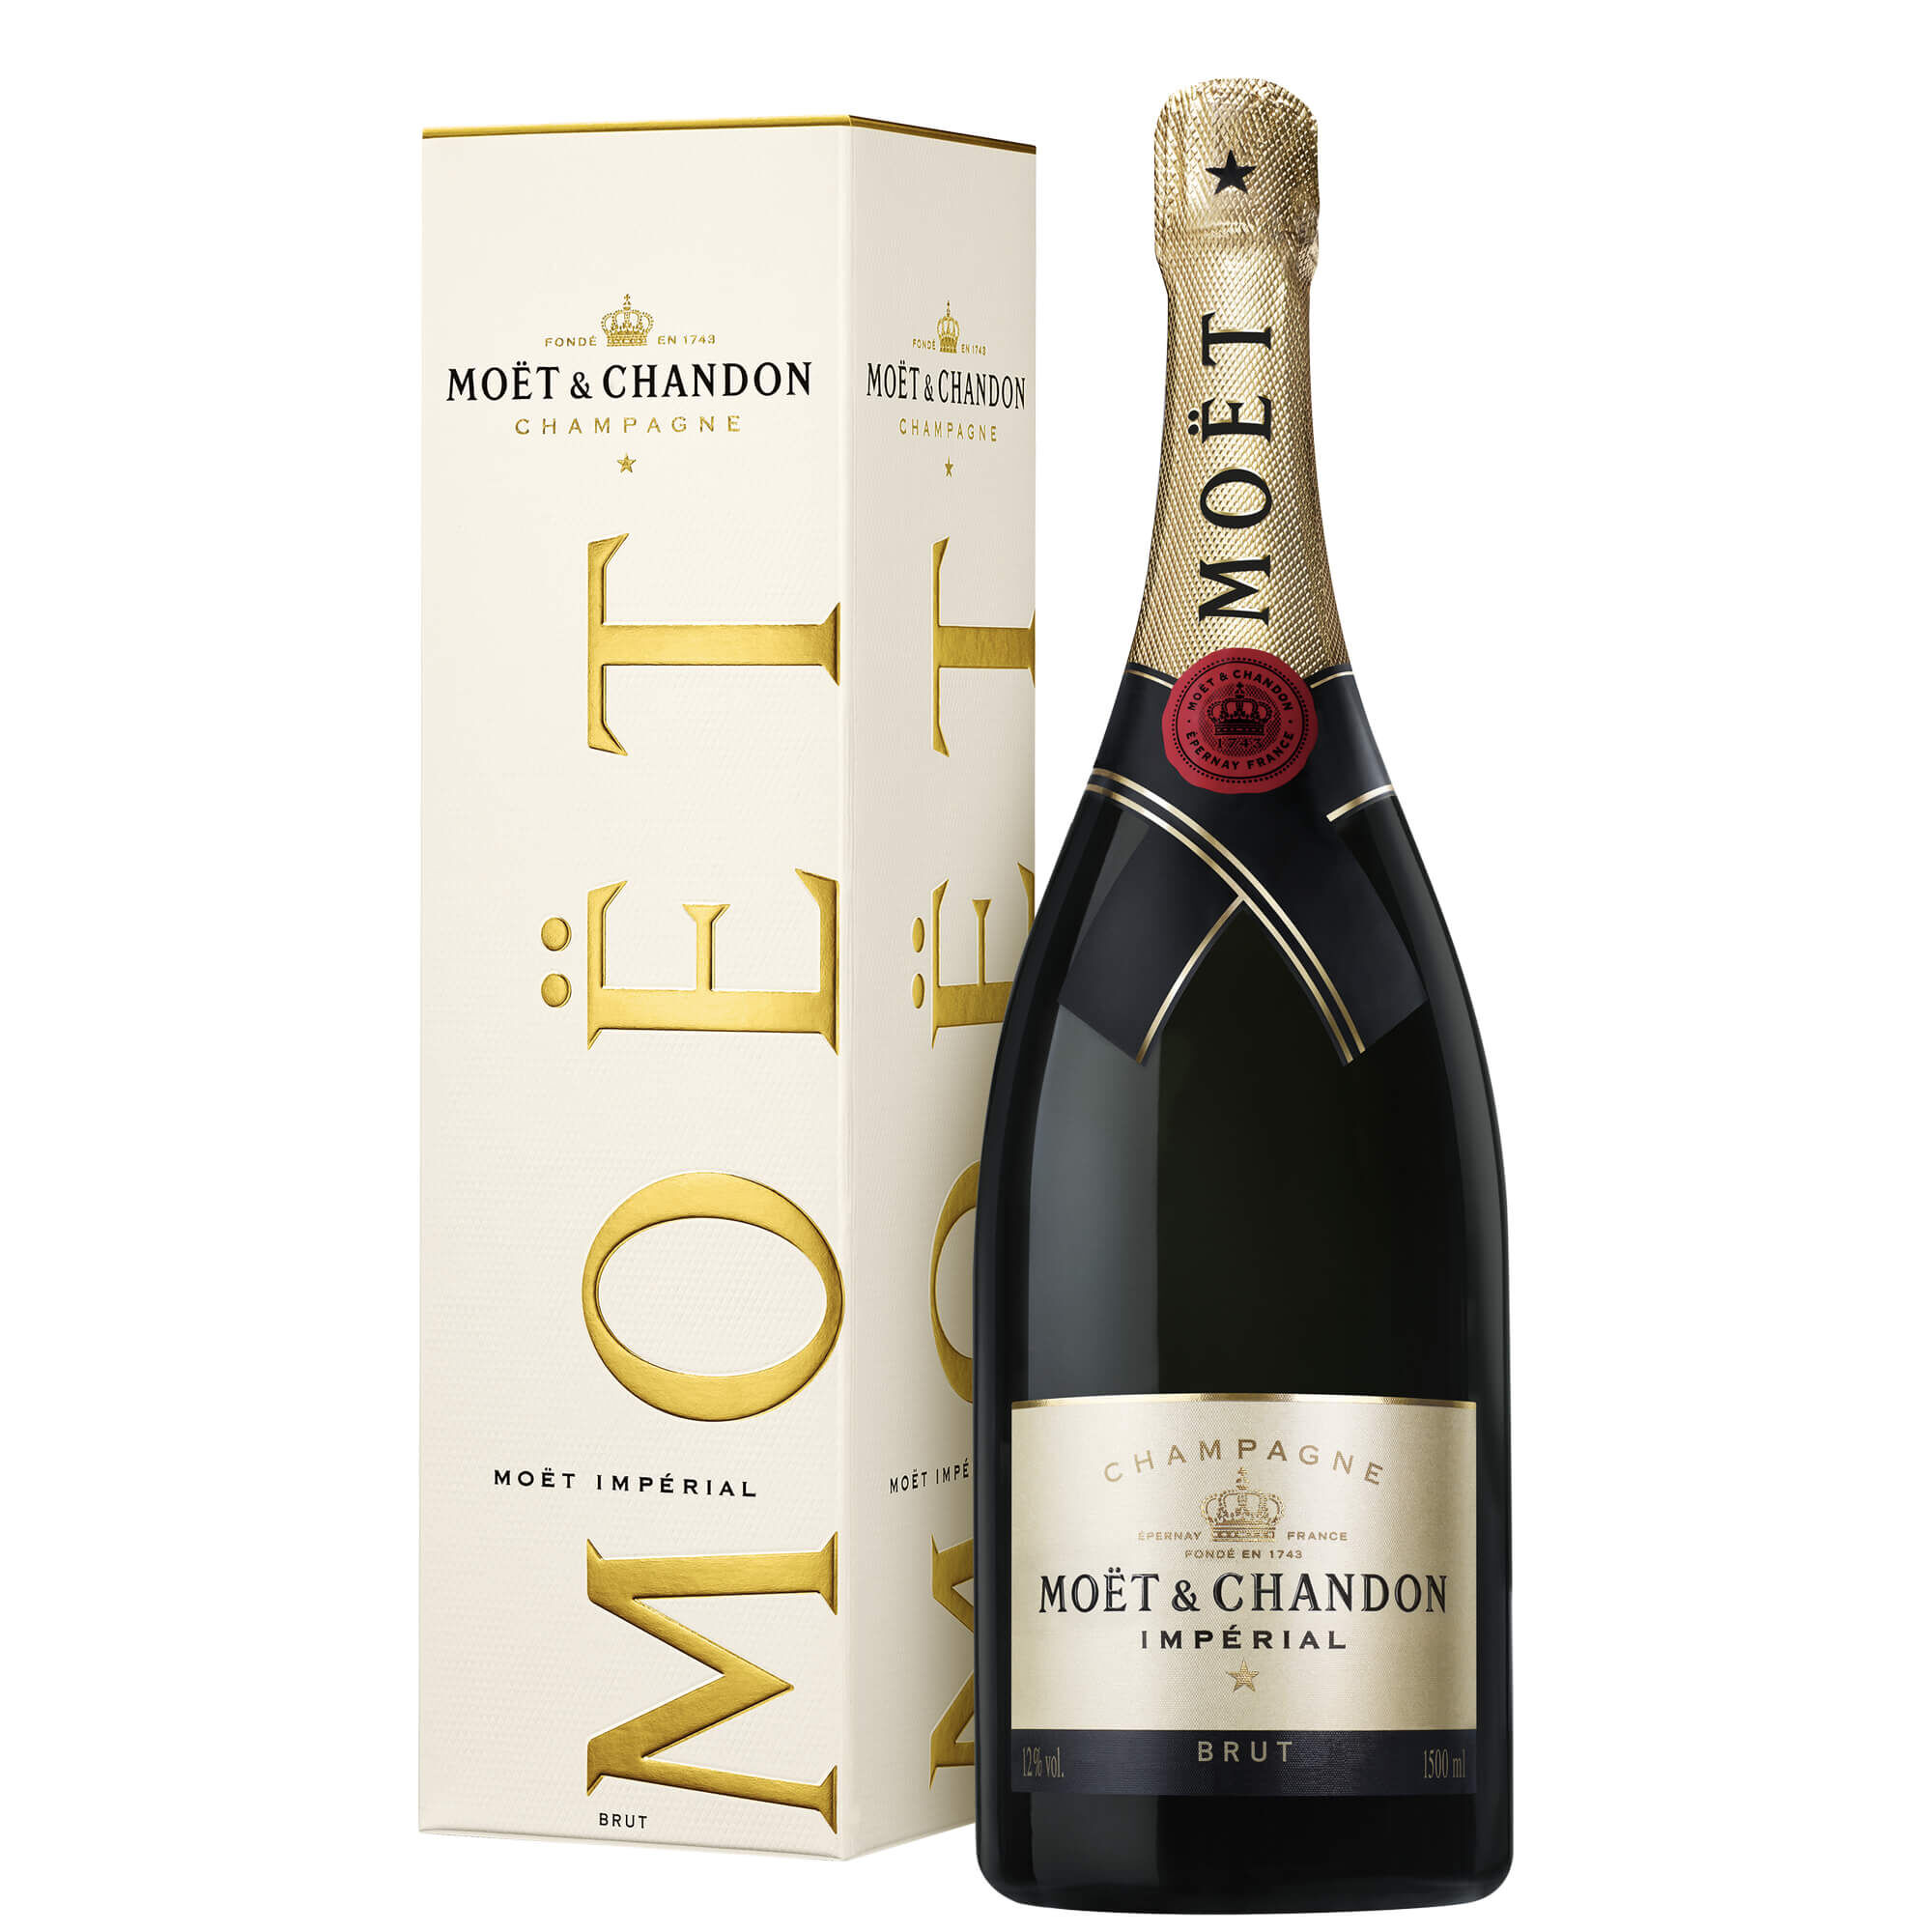 Moët & Chandon - Champagne Brut “moët Impérial” Magnum